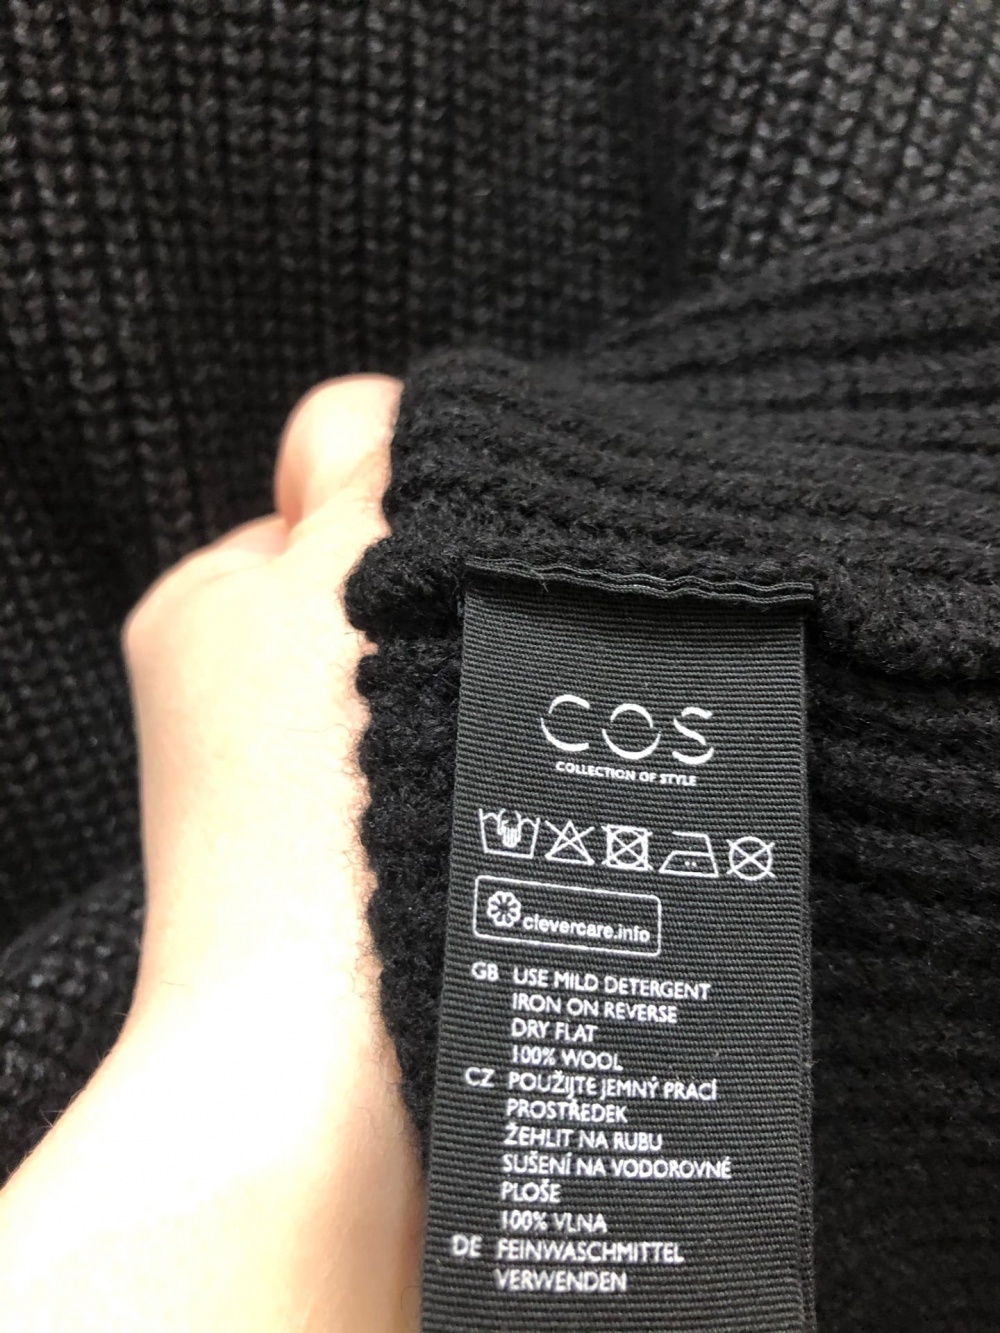 Шерстяной свитер COS.Размер M-L.